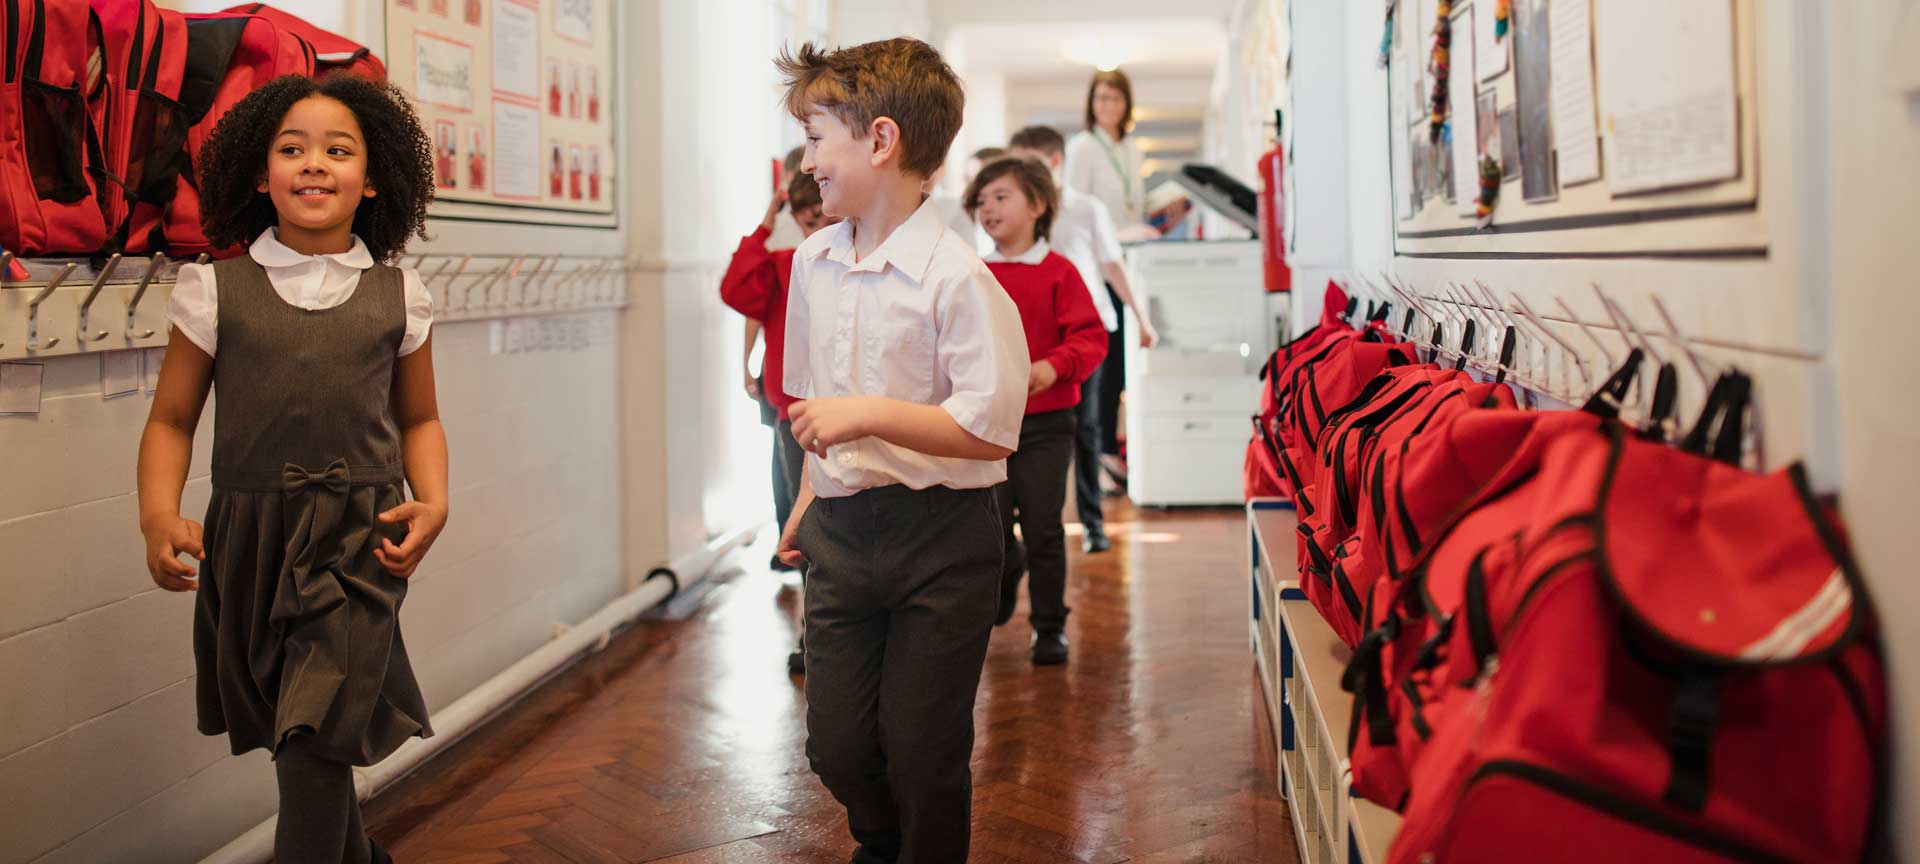 Children walking down a school corridor